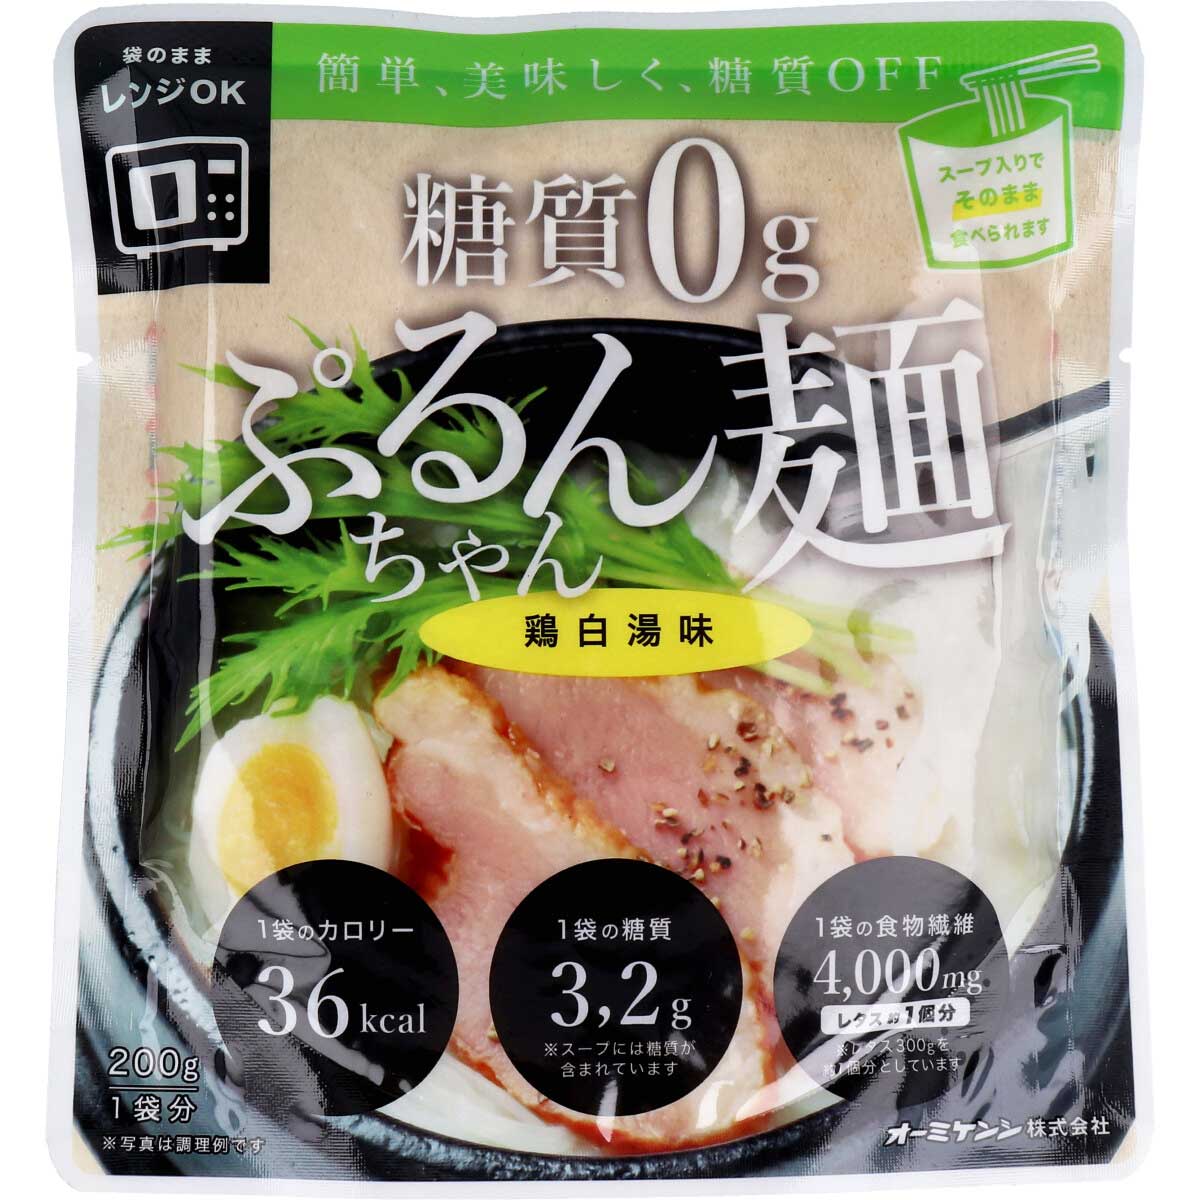 ※[販売終了]糖質0g ぷるんちゃん麺 鶏白湯味 1食分 200g